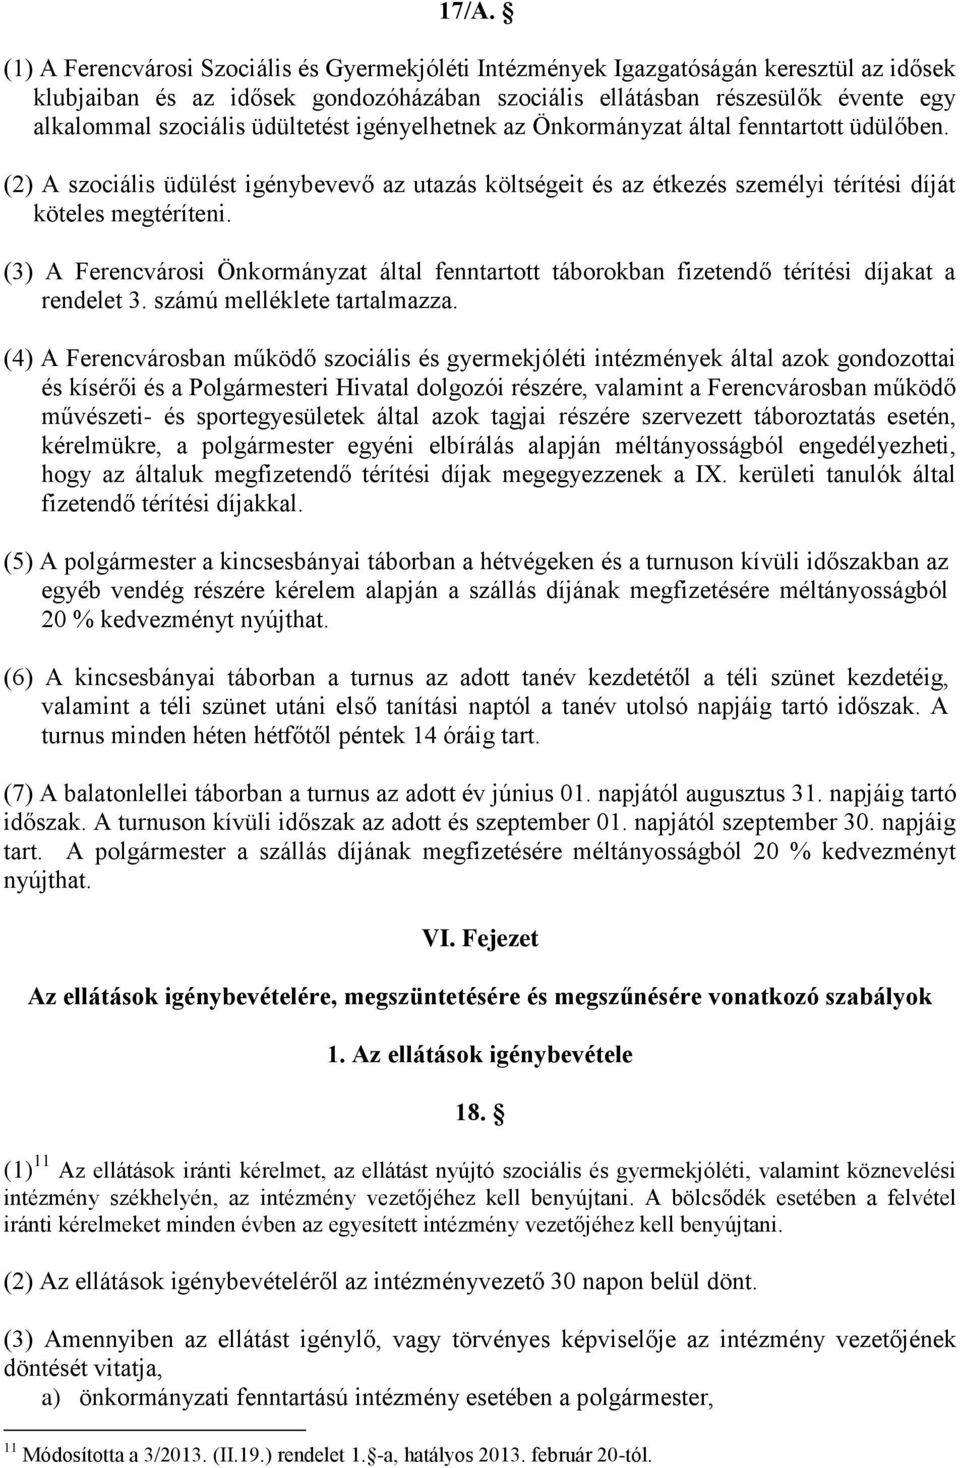 (3) A Ferencvárosi Önkormányzat által fenntartott táborokban fizetendő térítési díjakat a rendelet 3. számú melléklete tartalmazza.